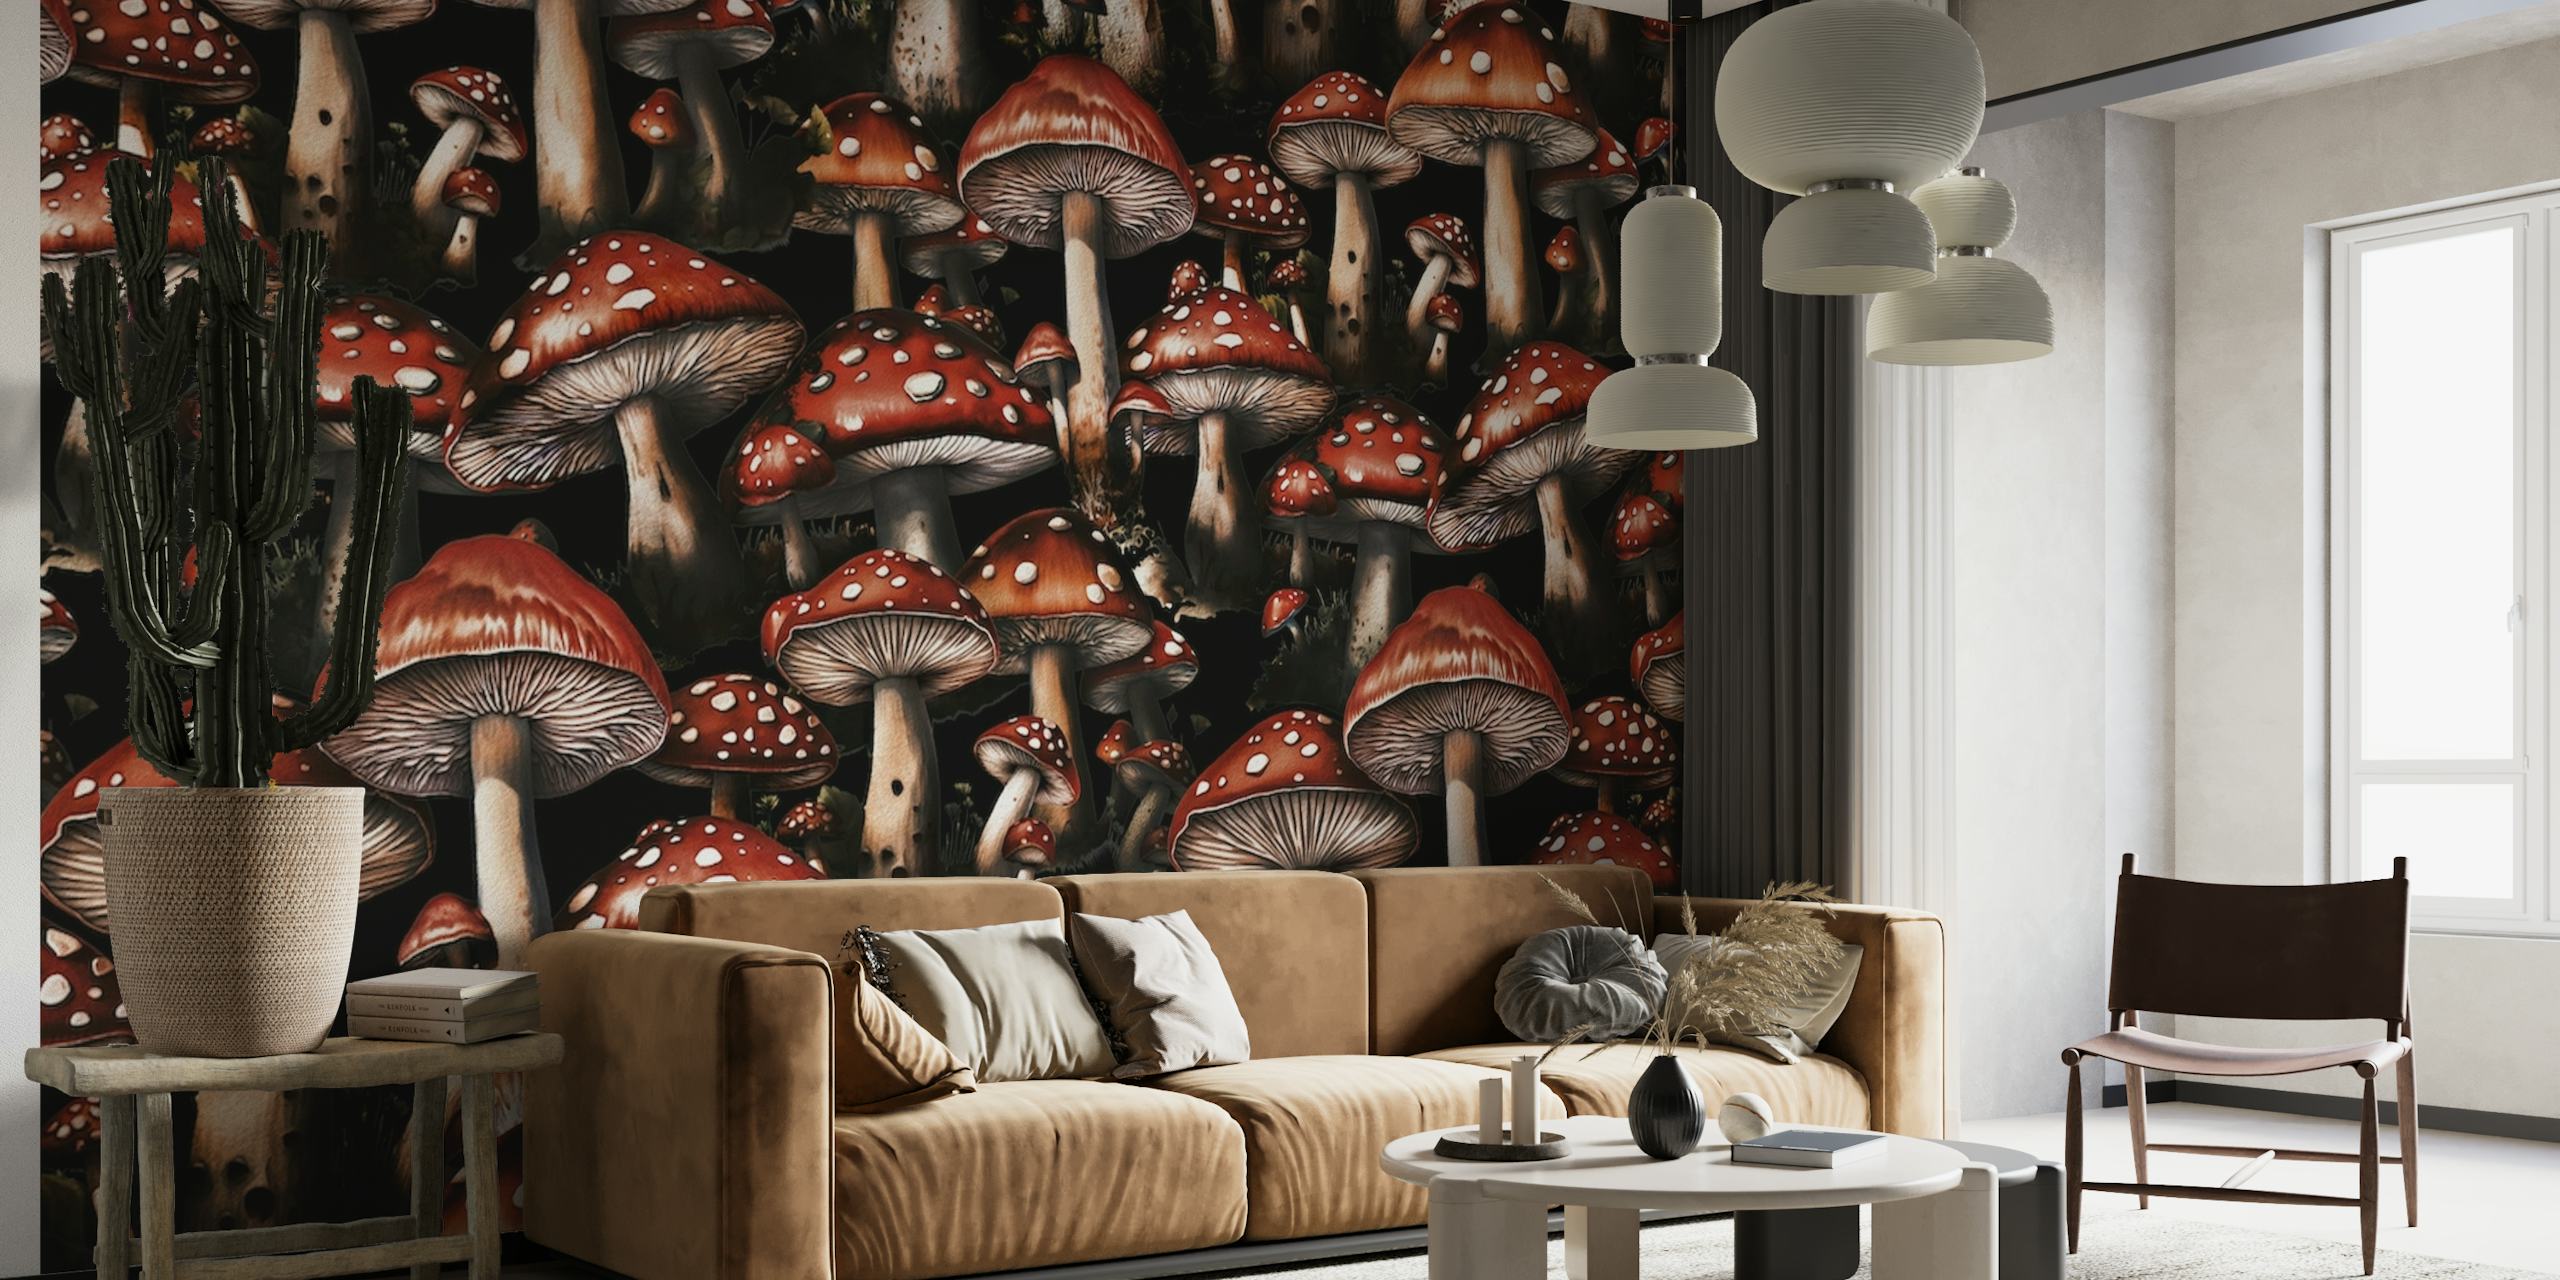 Fantasiepaddestoelenmuurschildering met paddenstoelen met rode dop op een donkere achtergrond voor woondecoratie.